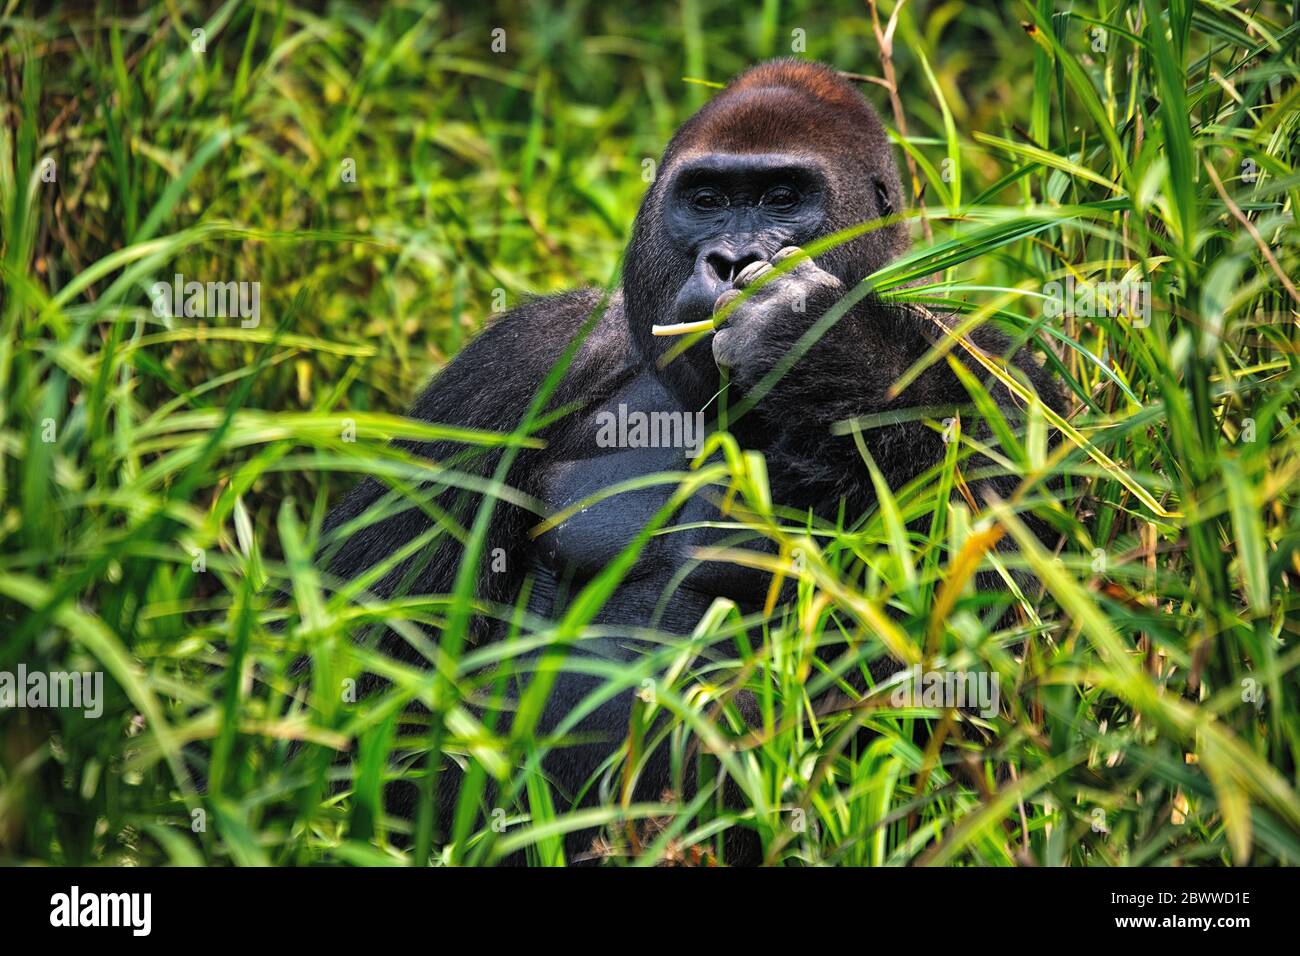 Repubblica Centrafricana, Ritratto di gorilla pianeggiante occidentale (gorilla gorilla gorilla) seduta in erba Foto Stock